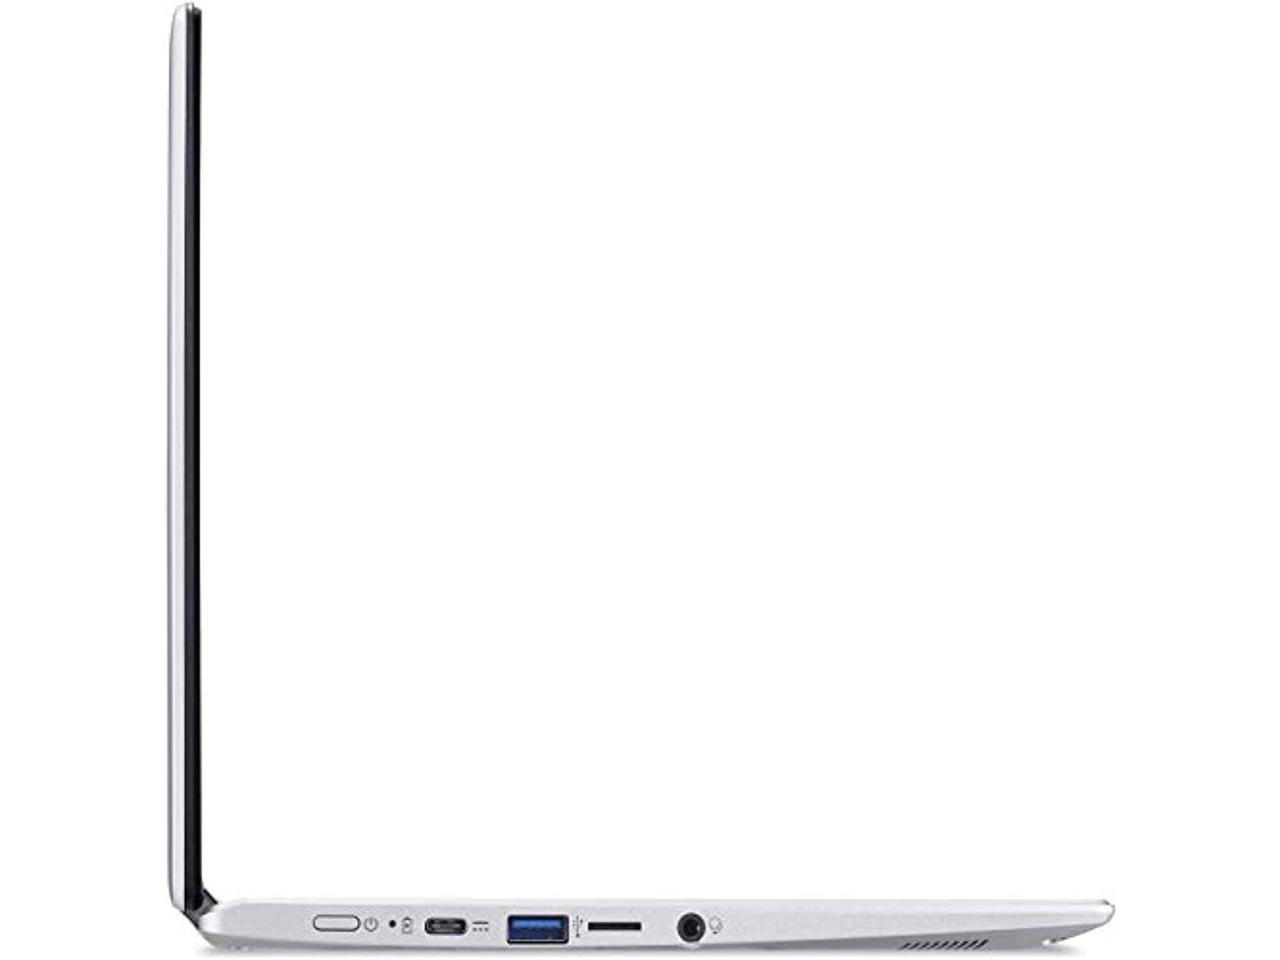 20900円 最安価格 中古 Apple MacBook Air 11.6インチ 1 366 x 768ピクセル解像度 Intel R Core TM i5-4260U CPU @ 1.30GHz メモリ4GB SSD128GB 21082502-0045 B+ランク